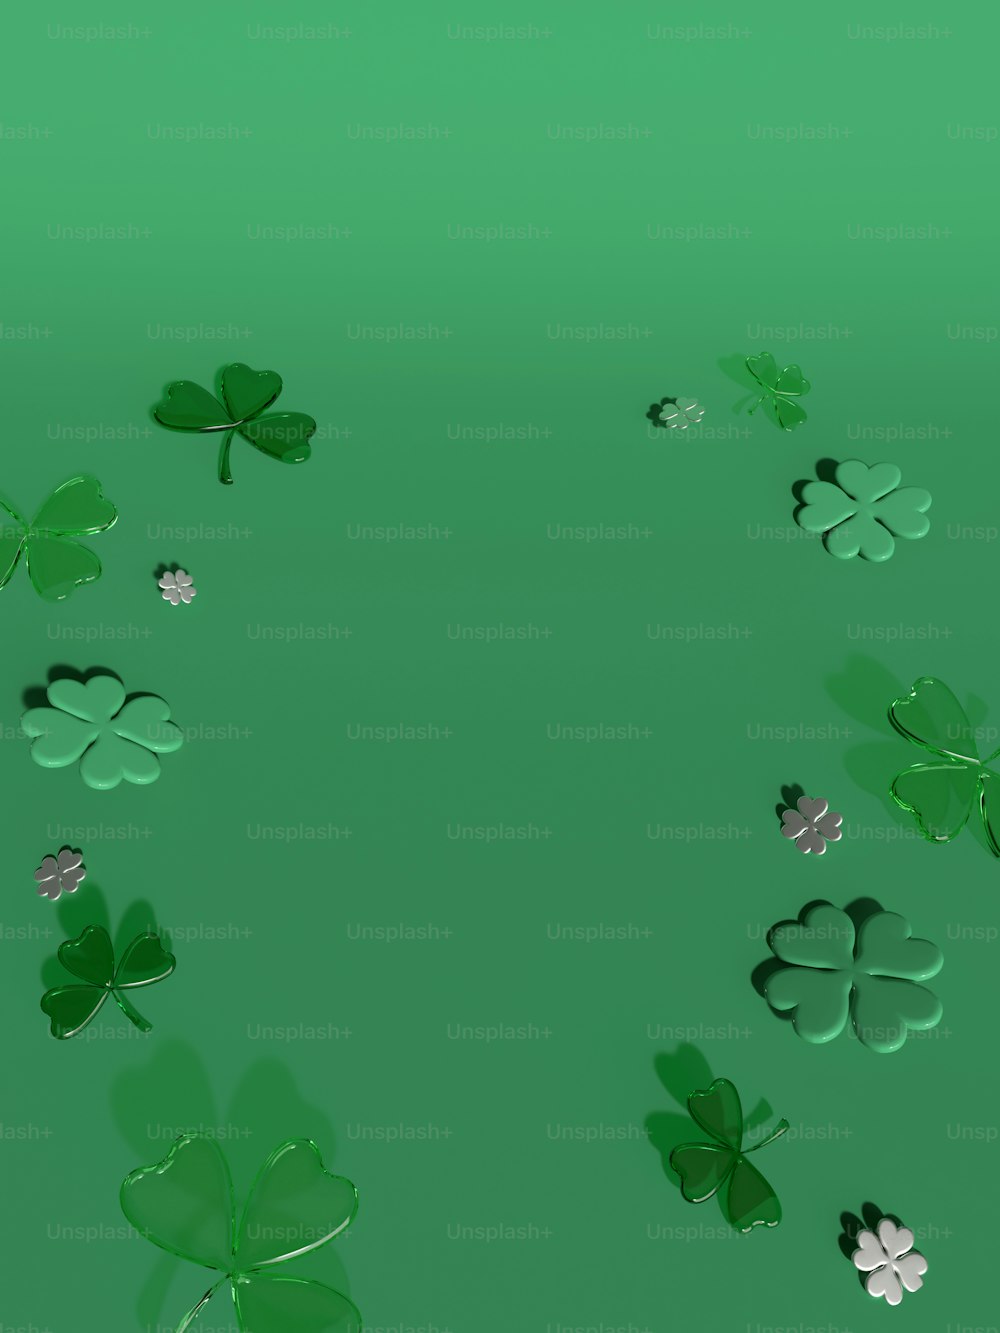 Un gruppo di trifogli verdi su uno sfondo verde